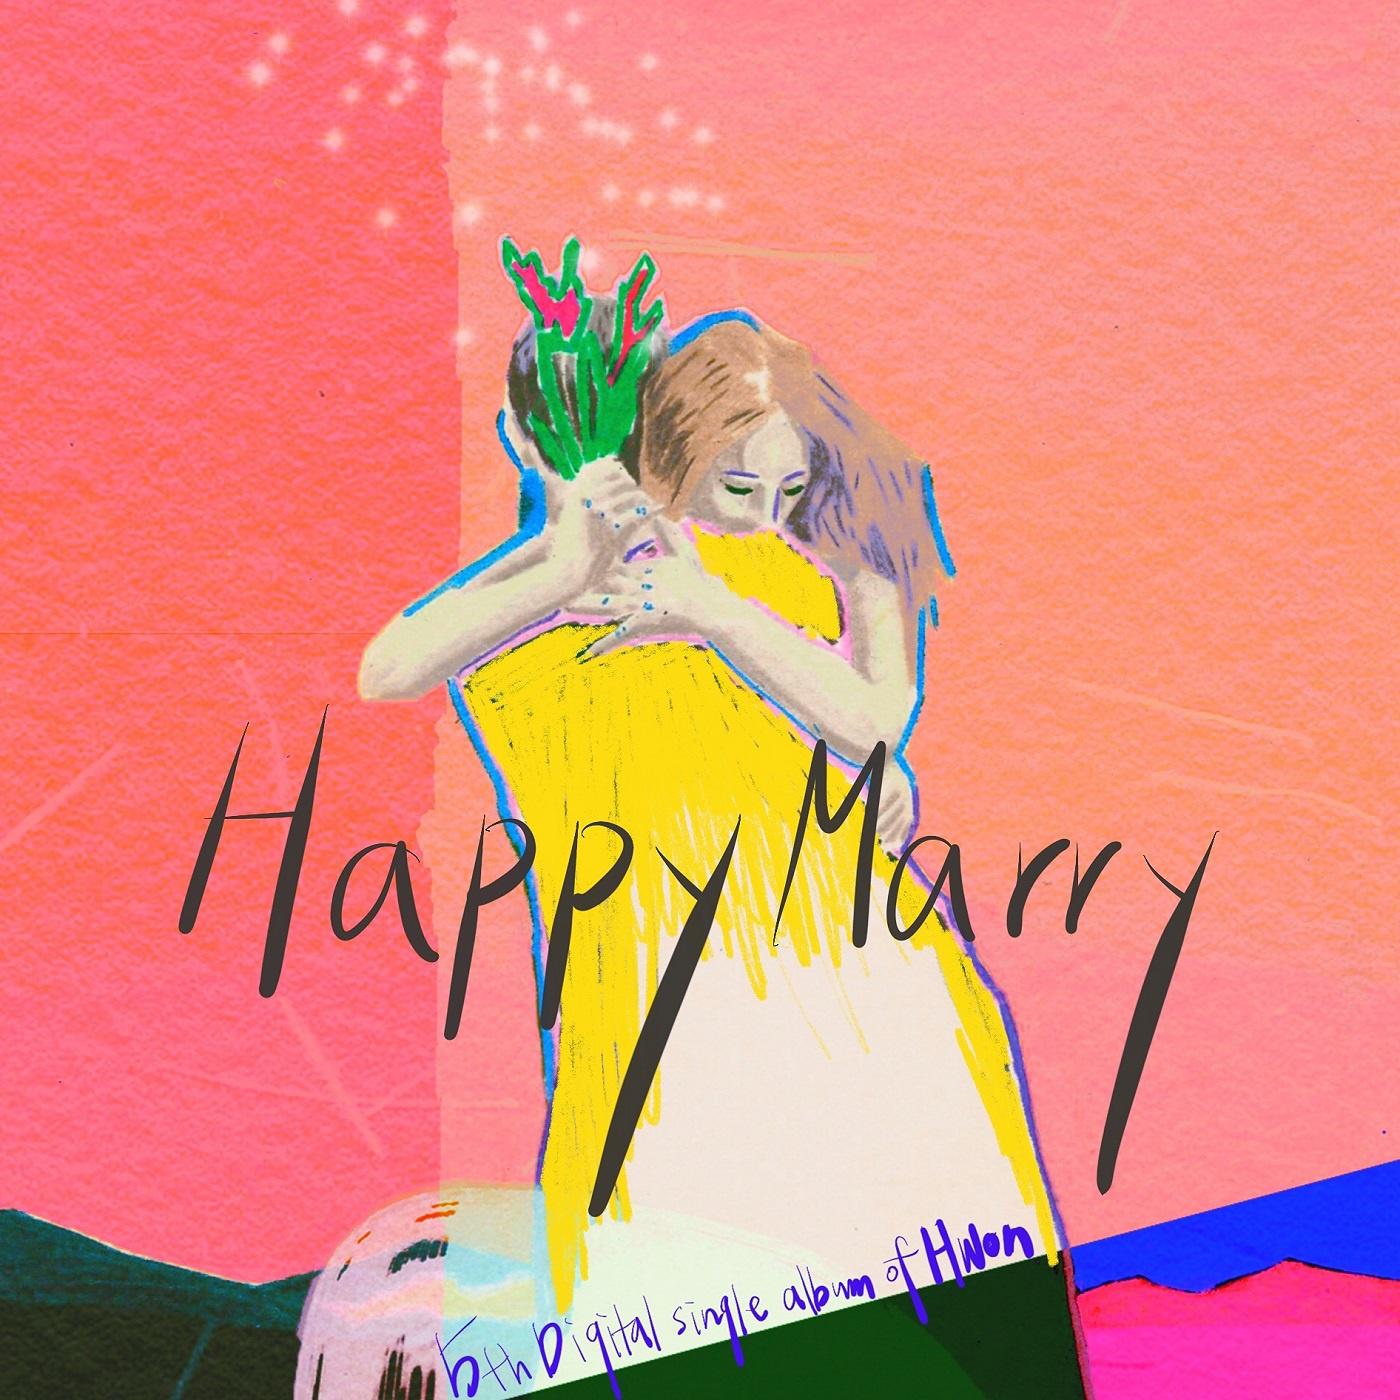 Happy Marry